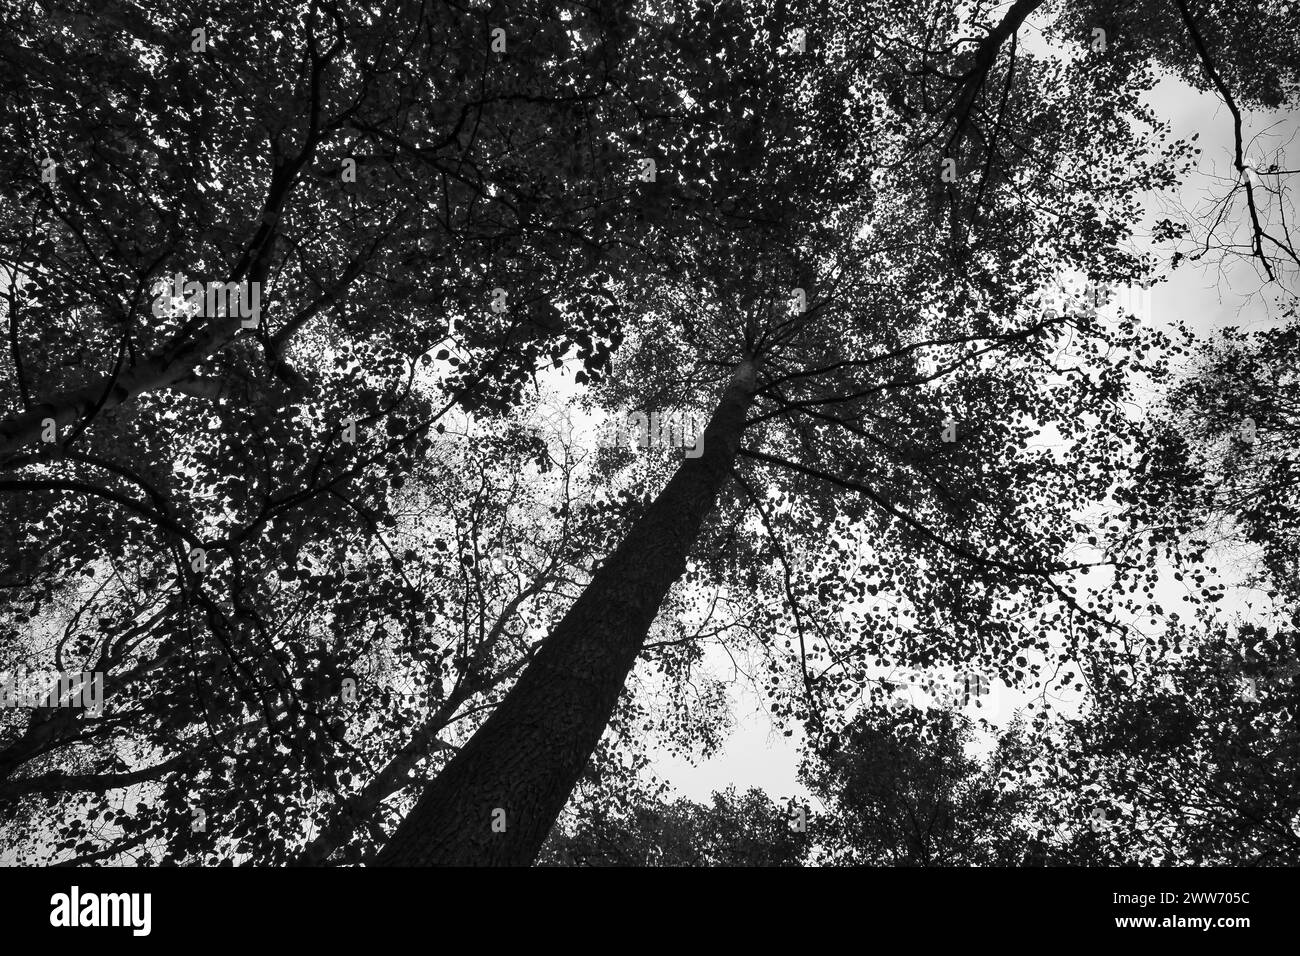 Vue sur la couronne d'un arbre à feuilles caduques dans la forêt. Vers le haut le long du tronc. Photo nature Banque D'Images